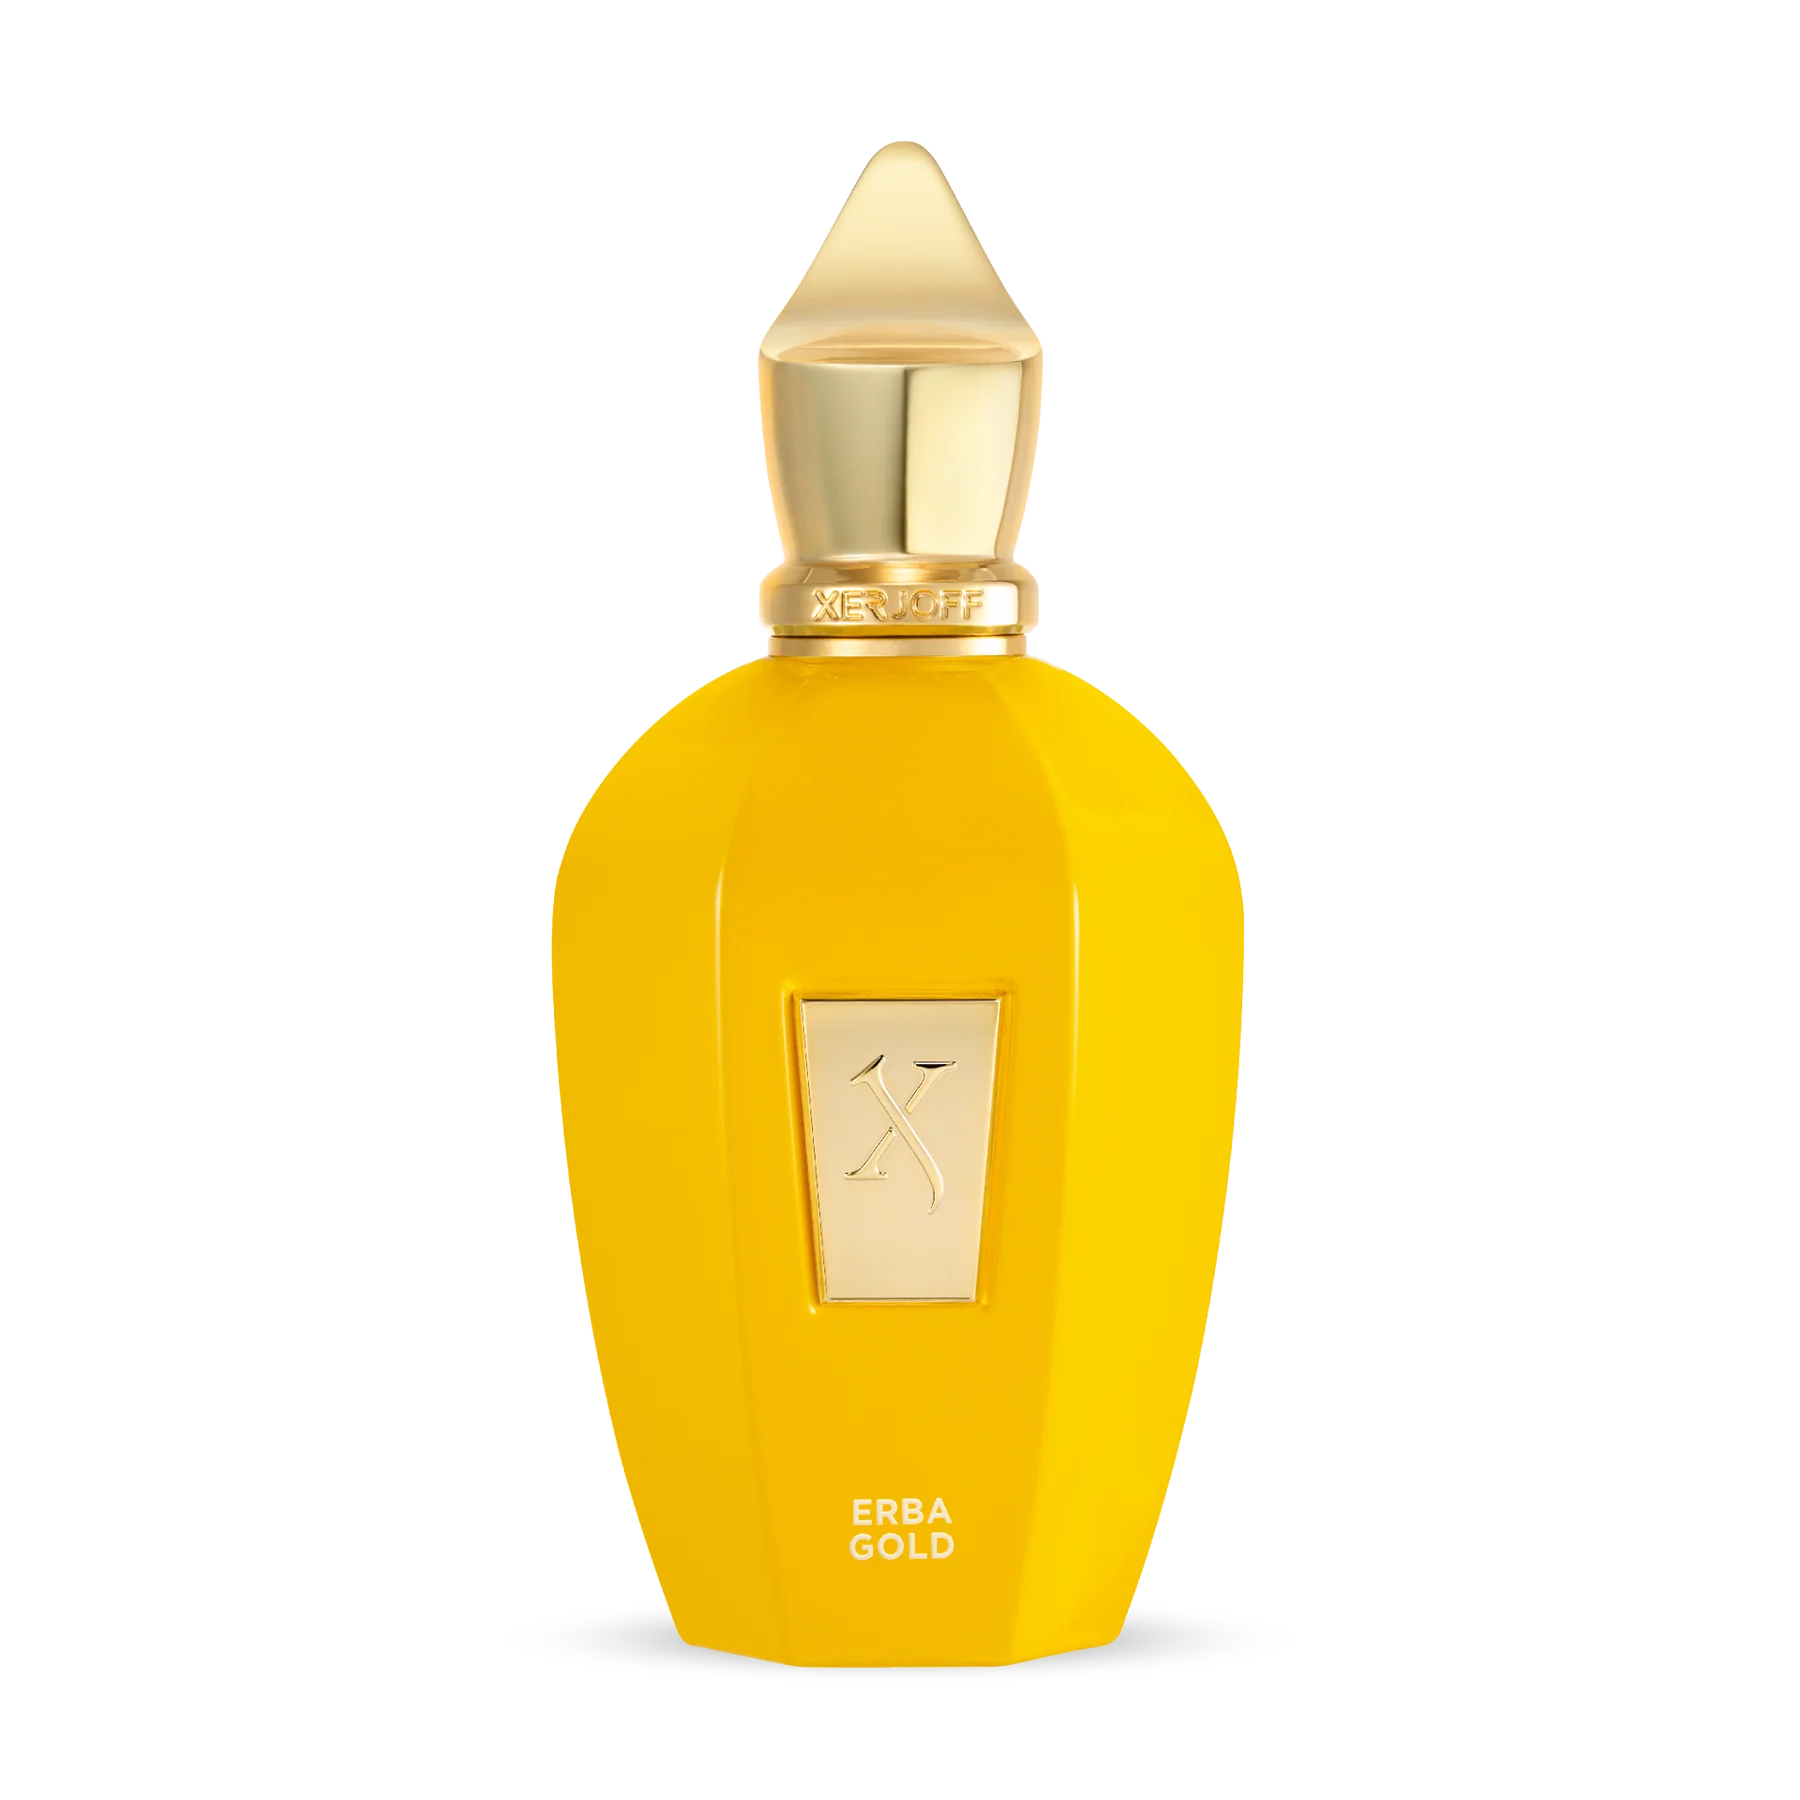 XerJoff - Erba Gold - Eau de Parfum